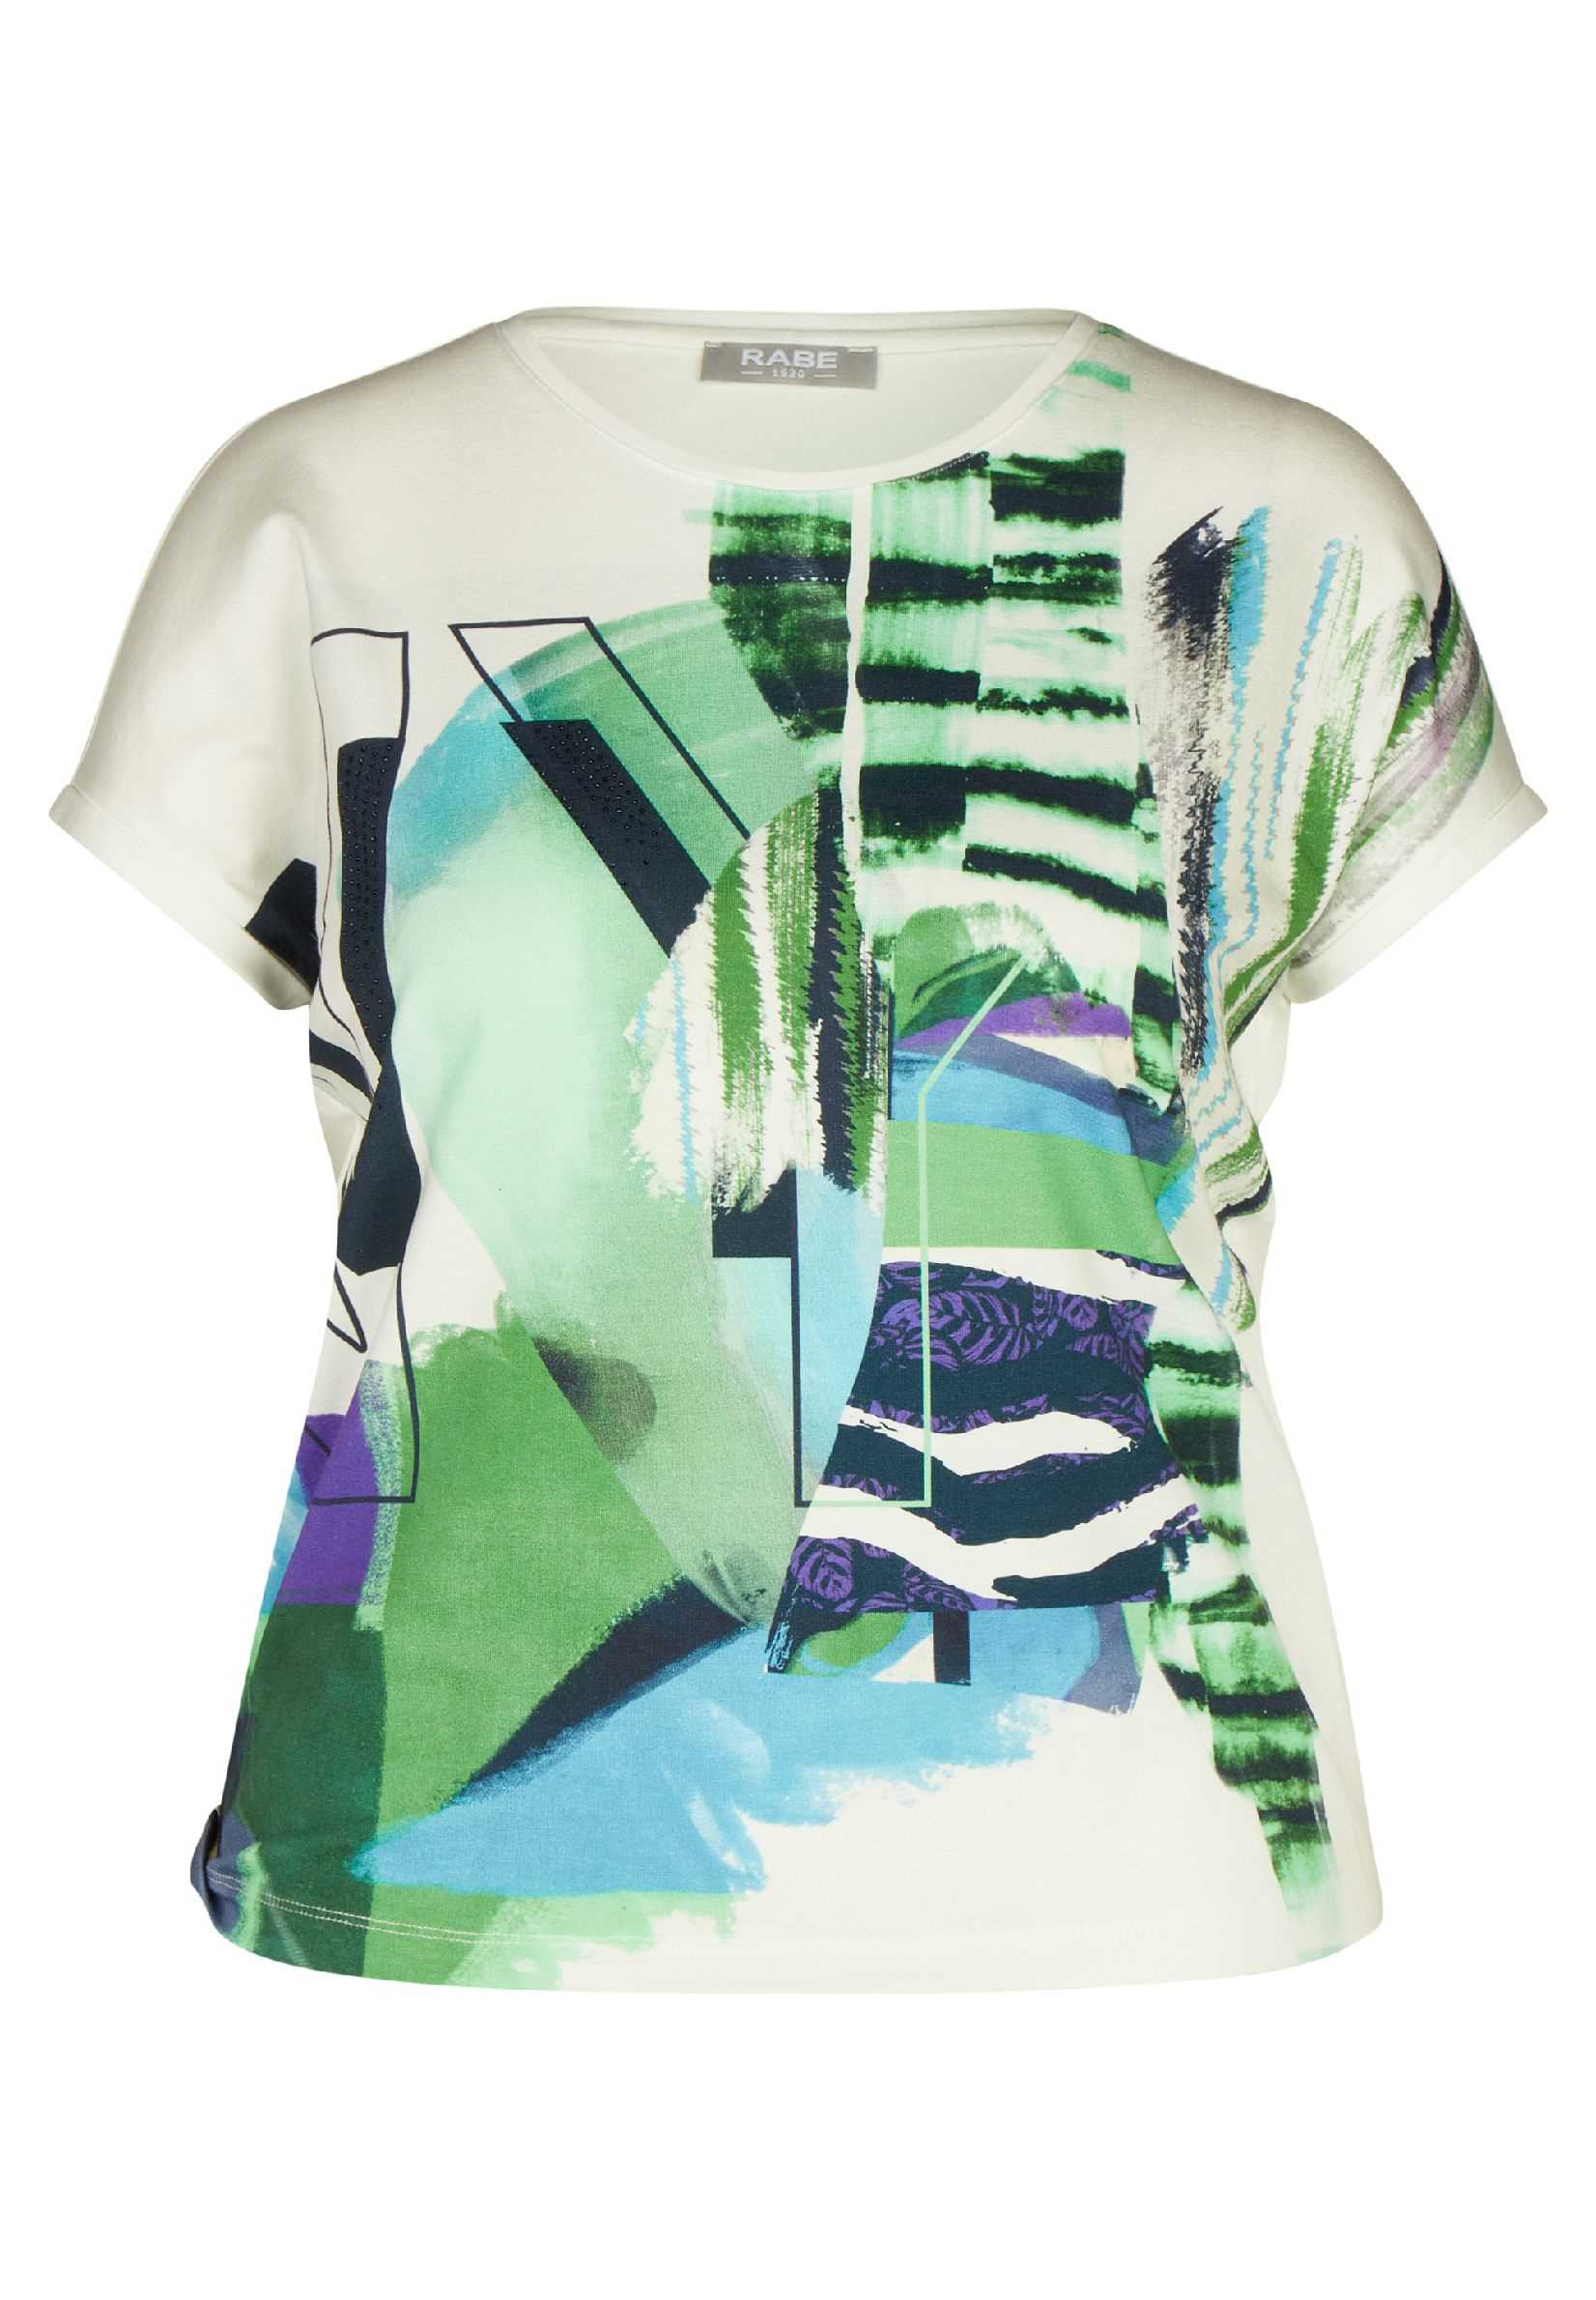 Rabe T-Shirt Natur E Print Groen | Mariëlle Mode / Daniëlle Exclusief